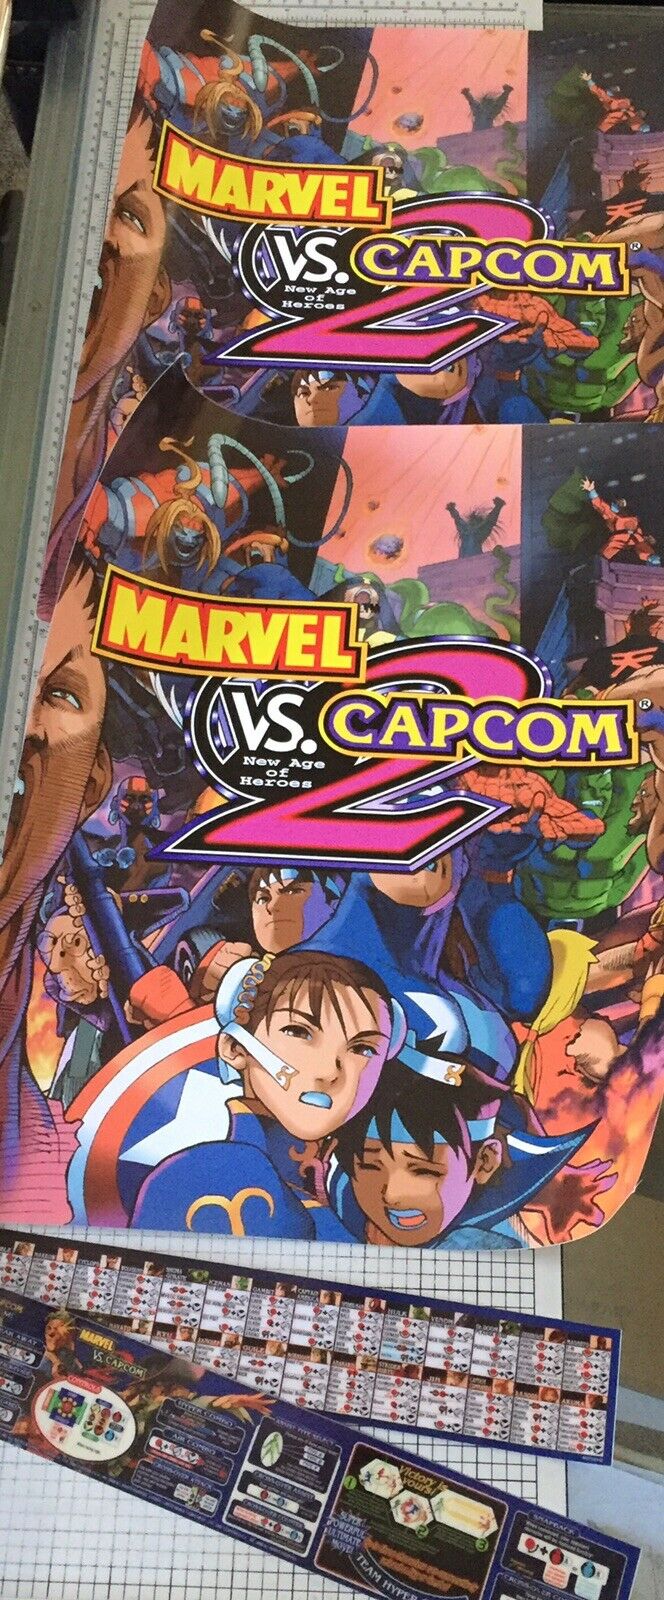 Marvel Vs Capcom 2 Arcade Side Art And Moves List - Arcade Marquee Dot Com